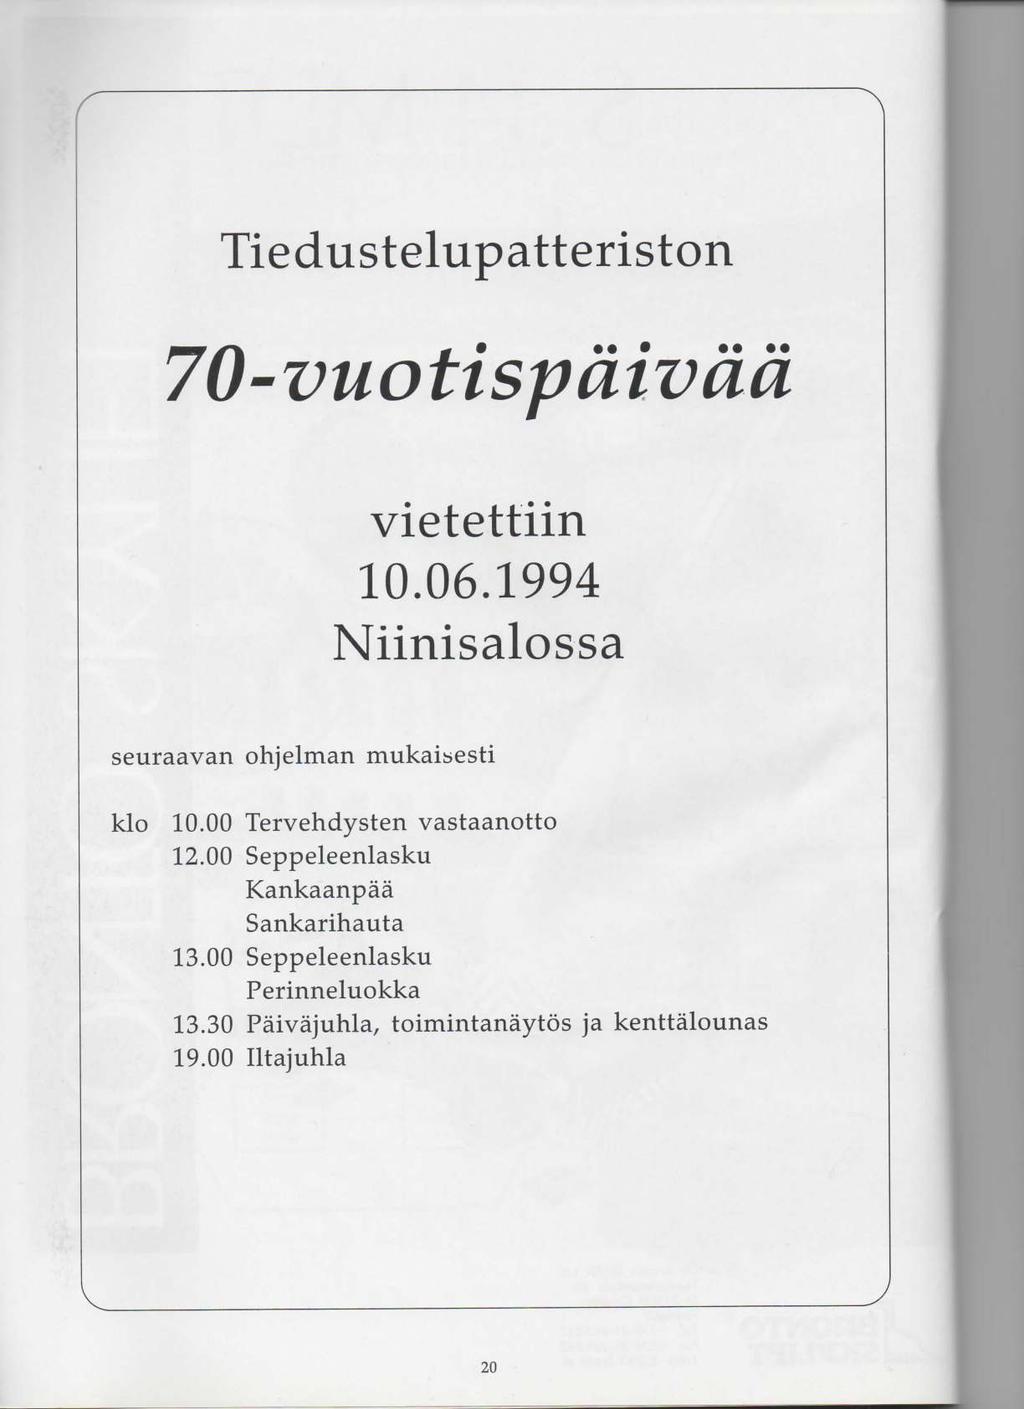 Tiedustelupatteriston 70-vuotispiiivaa vietettiin 10.06.1994 Niinisalossa seuraavan ohjelman mukaisesti klo 10.00 Tervehdysten vastaanotto 12.